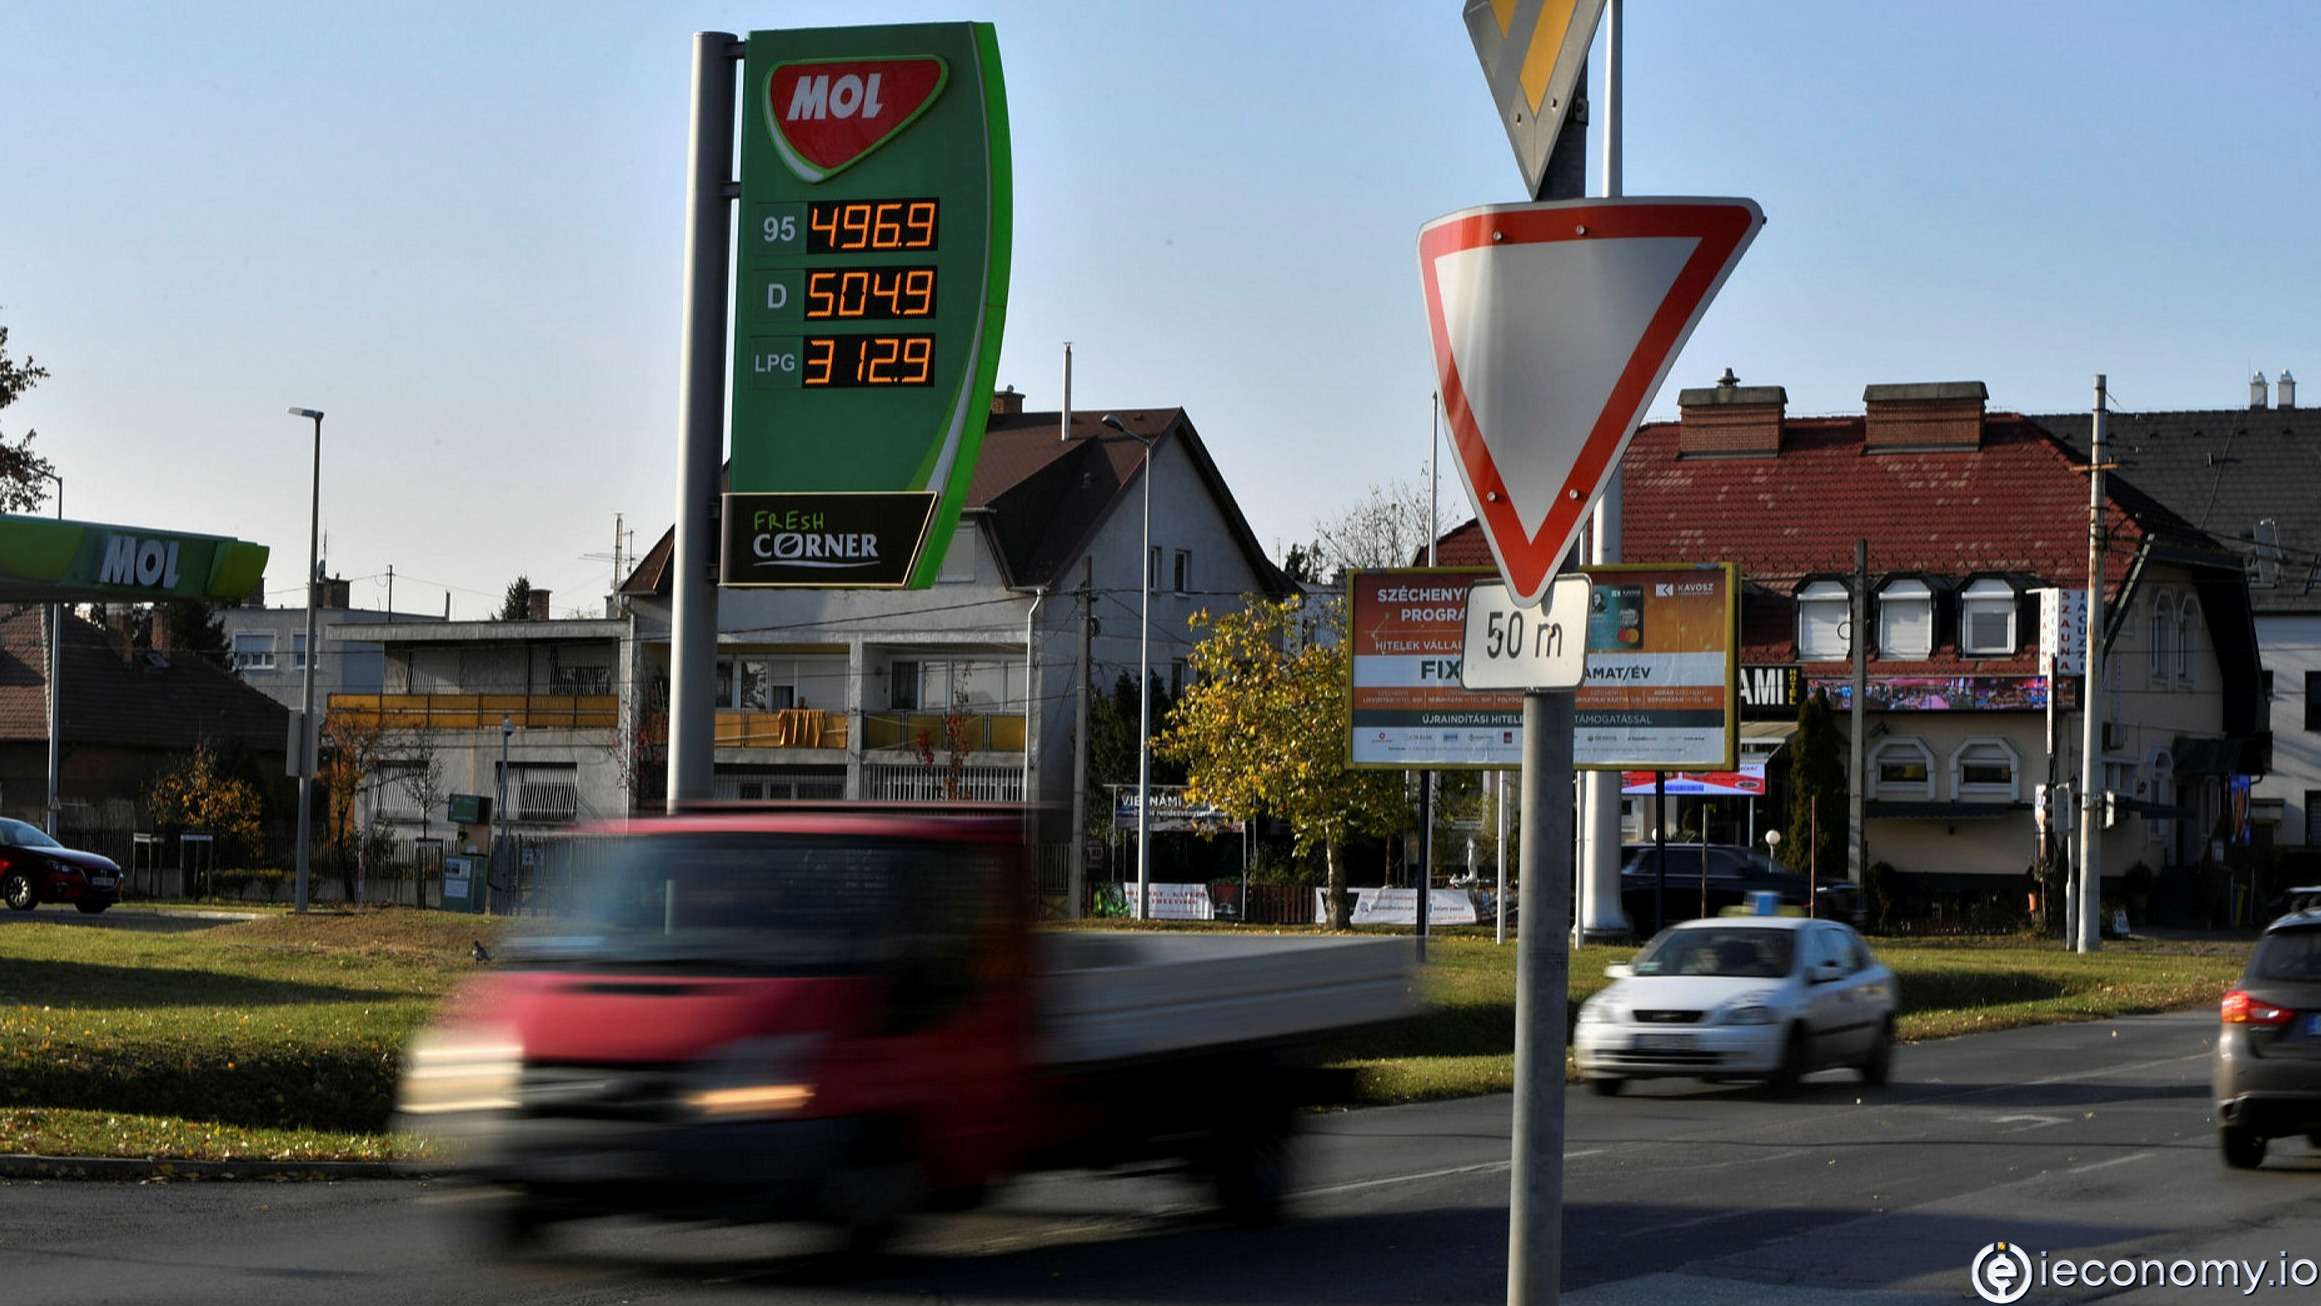 Macar hükümeti geçici olarak bir yakıt fiyatı üst sınırı belirliyor